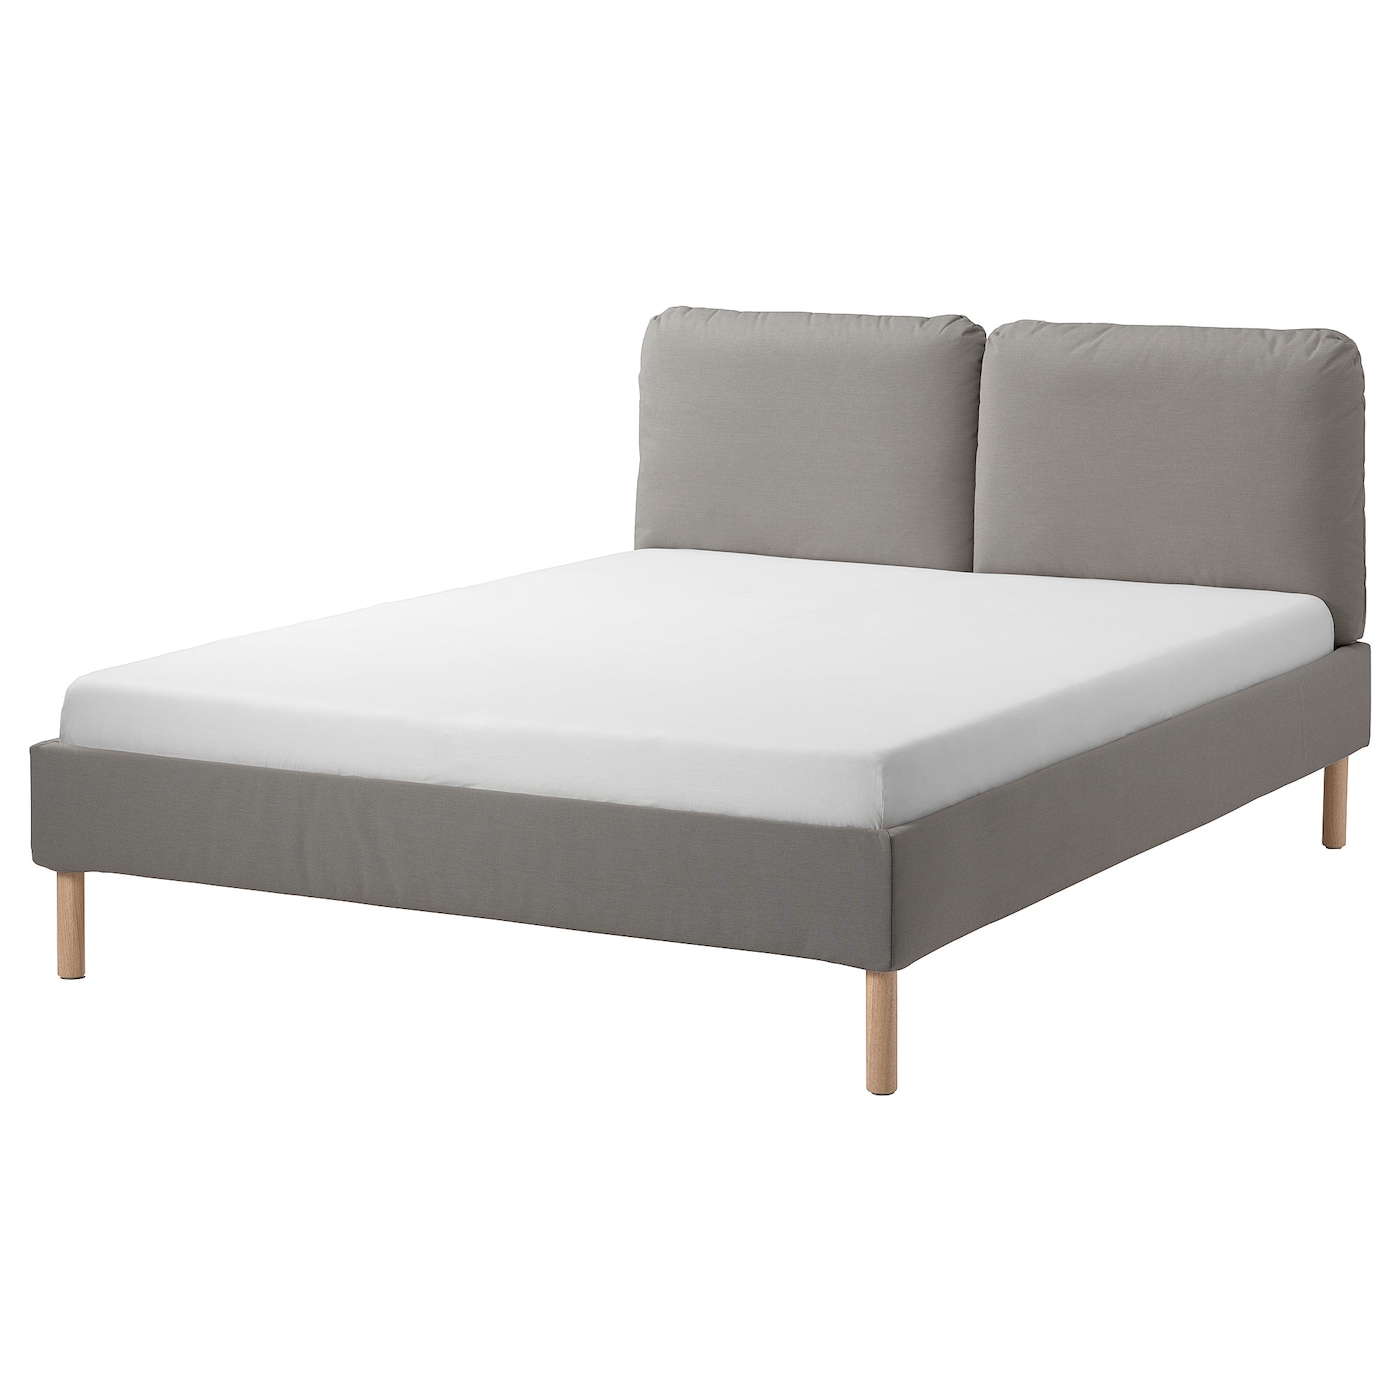 Каркас кровати с обивкой - IKEA SAGESUND, 200х140 см, серый, САГЕСЕНД ИКЕА